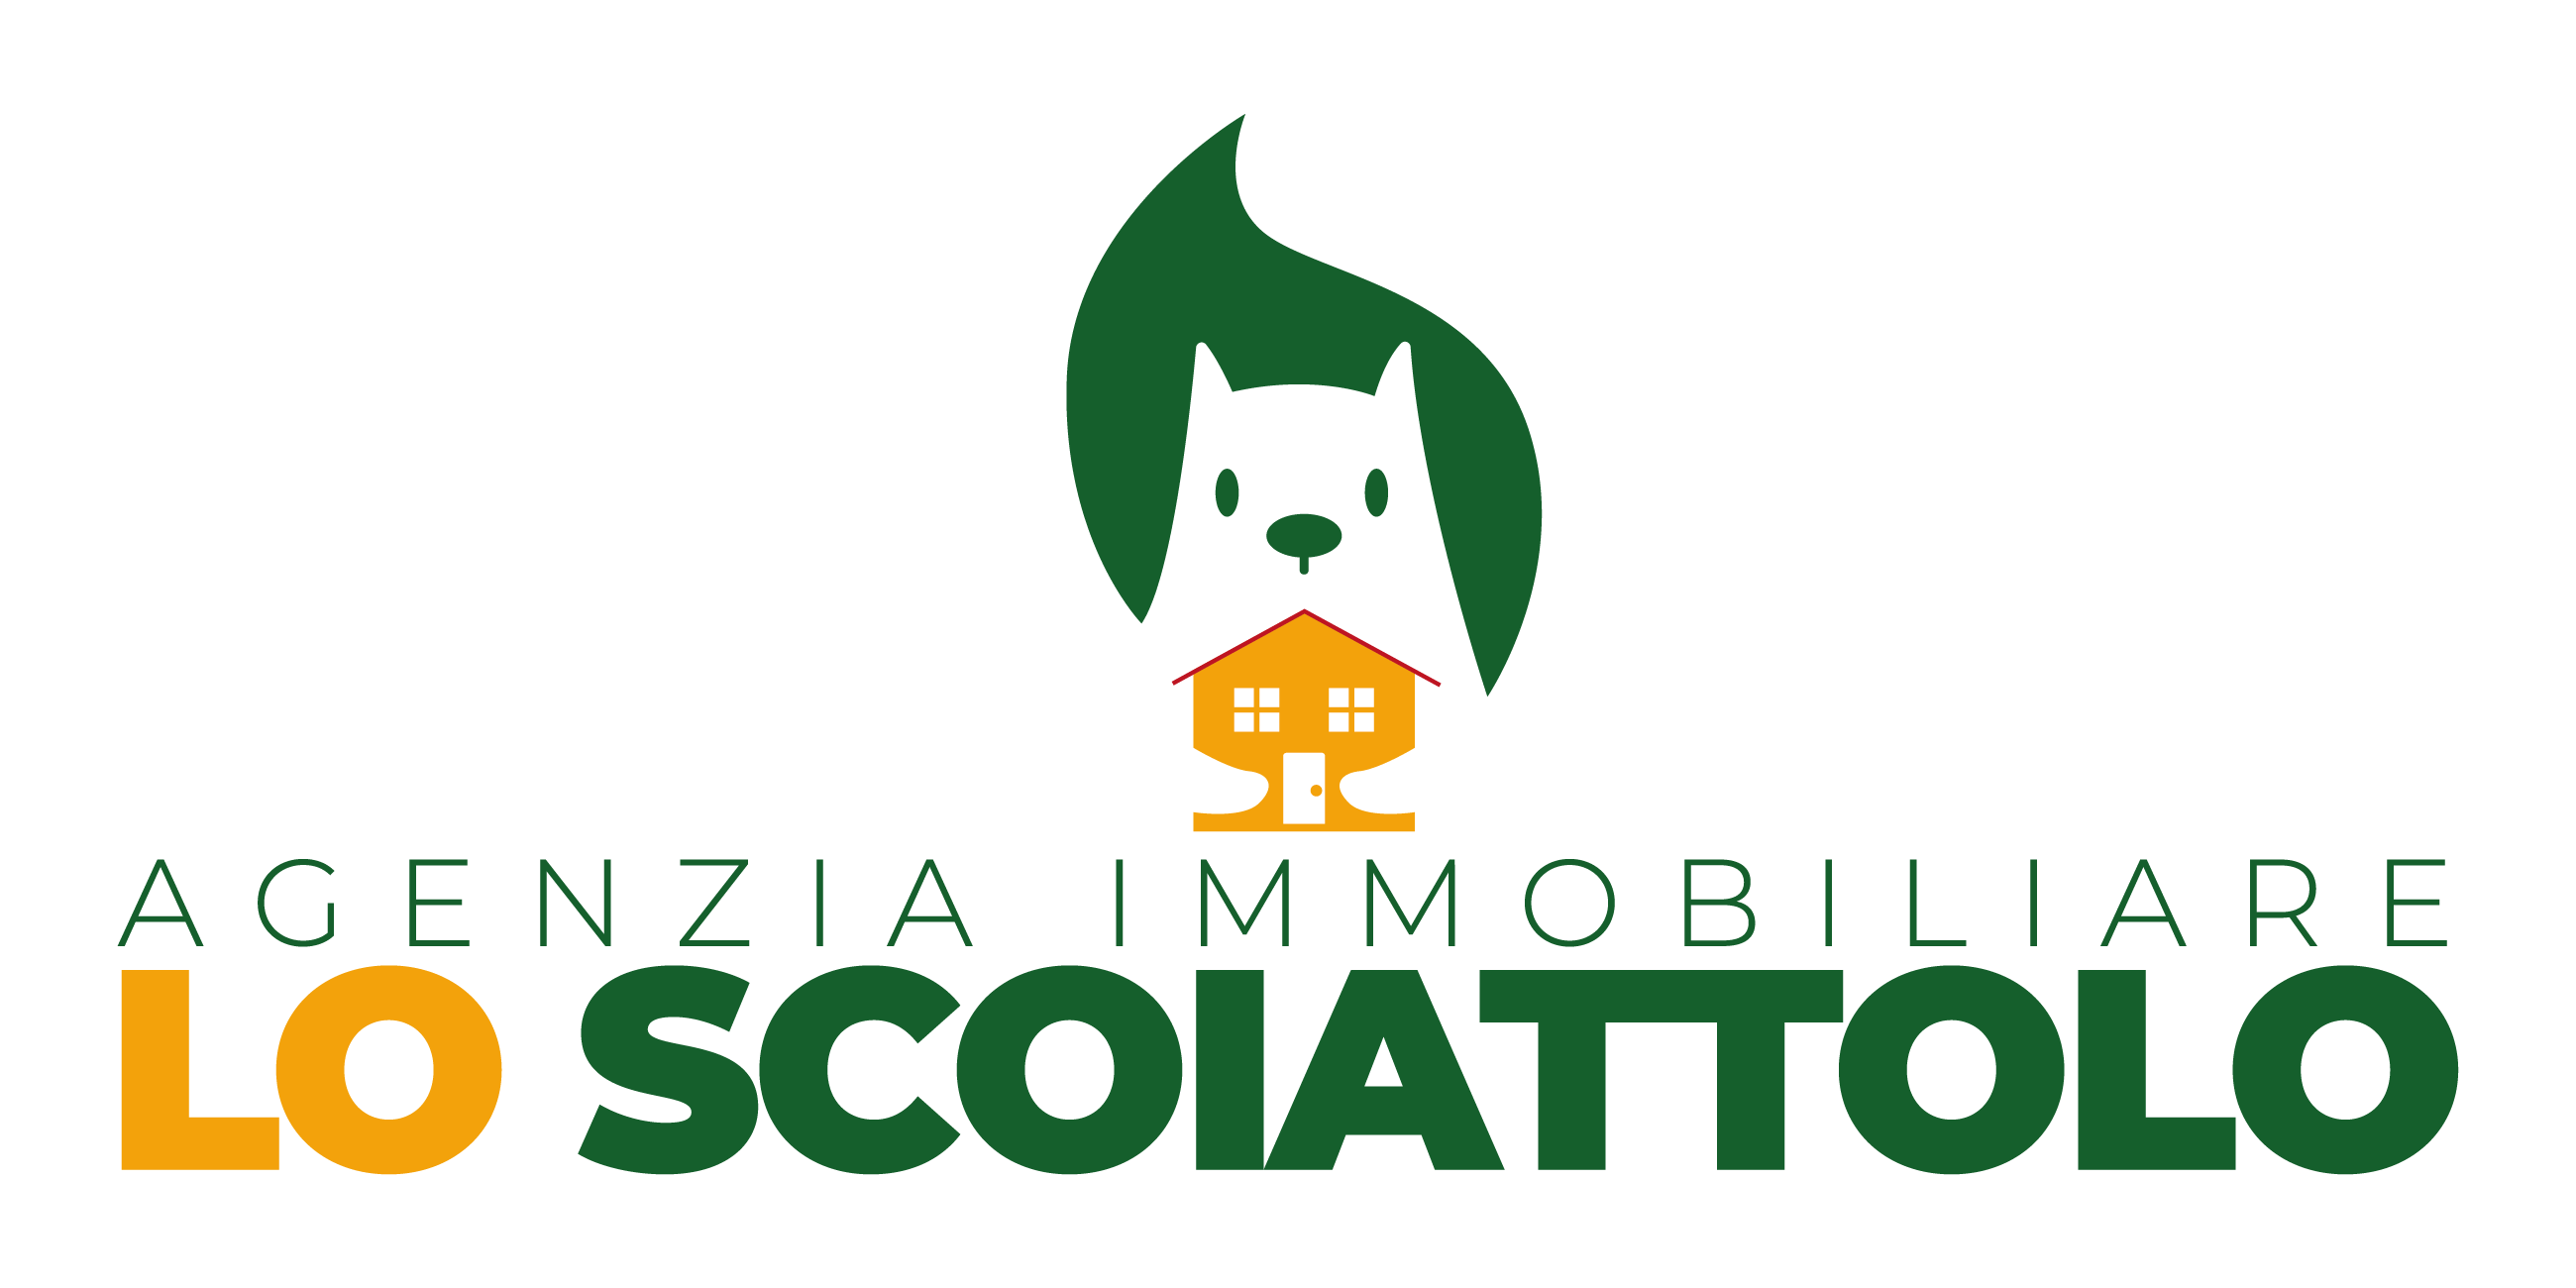 Logo Agenzia Immobiliare Lo Scoiattolo